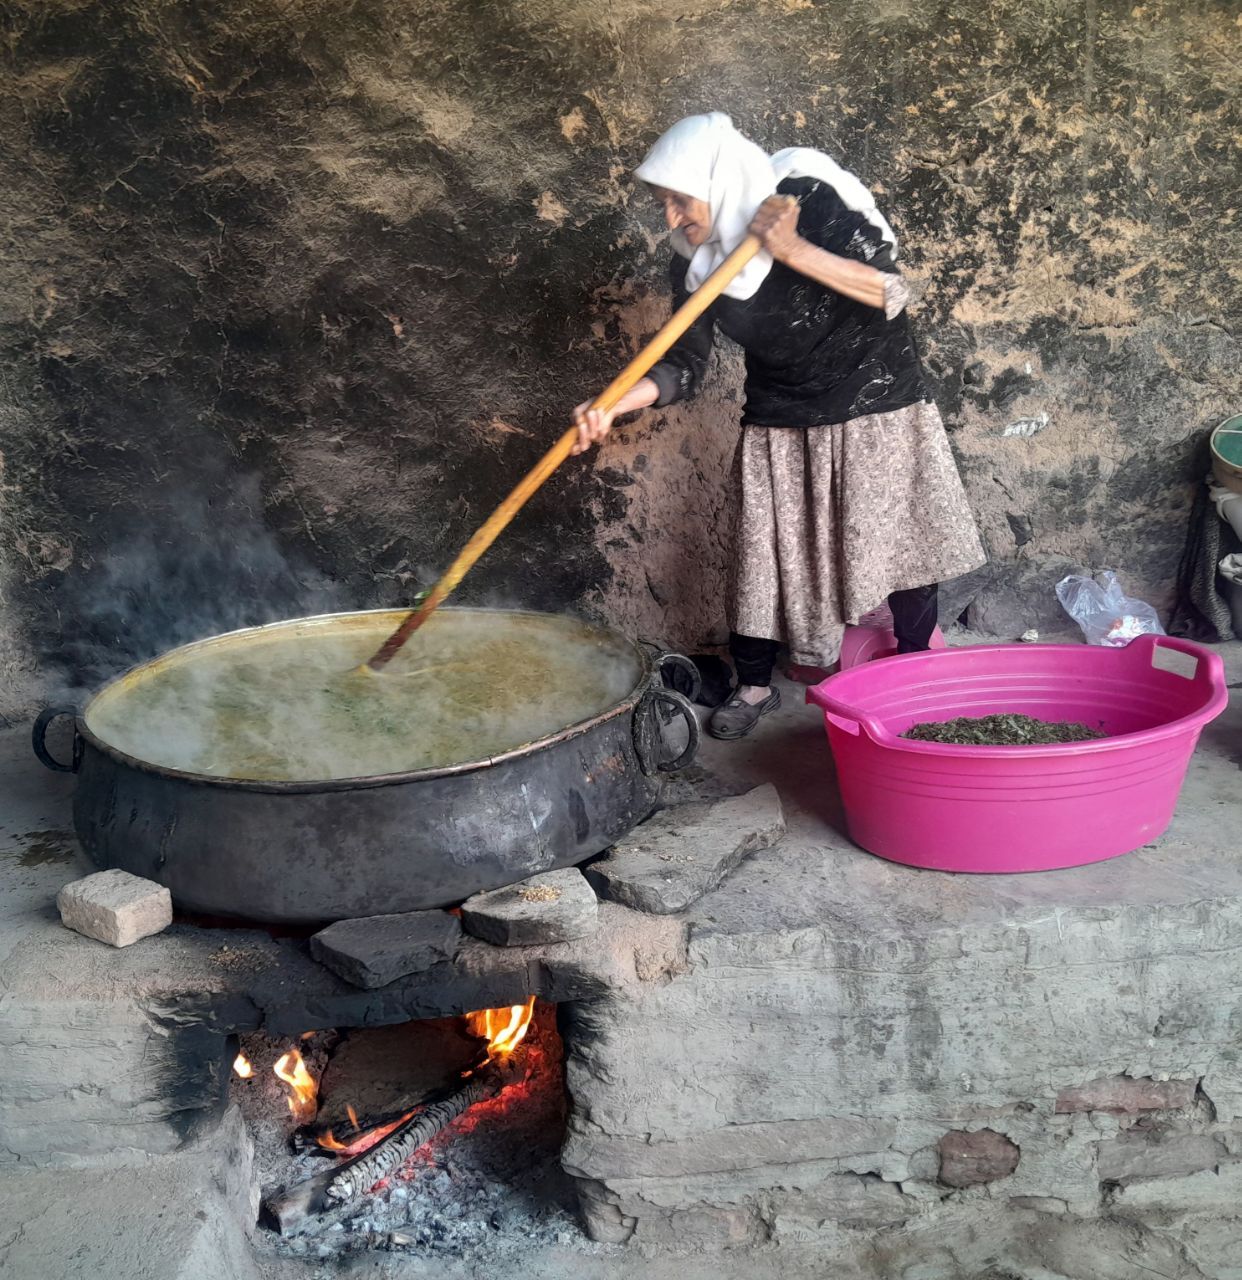 پخت آش نذری در روستای علاقه بخش رخ شهرستان تربت حیدریه